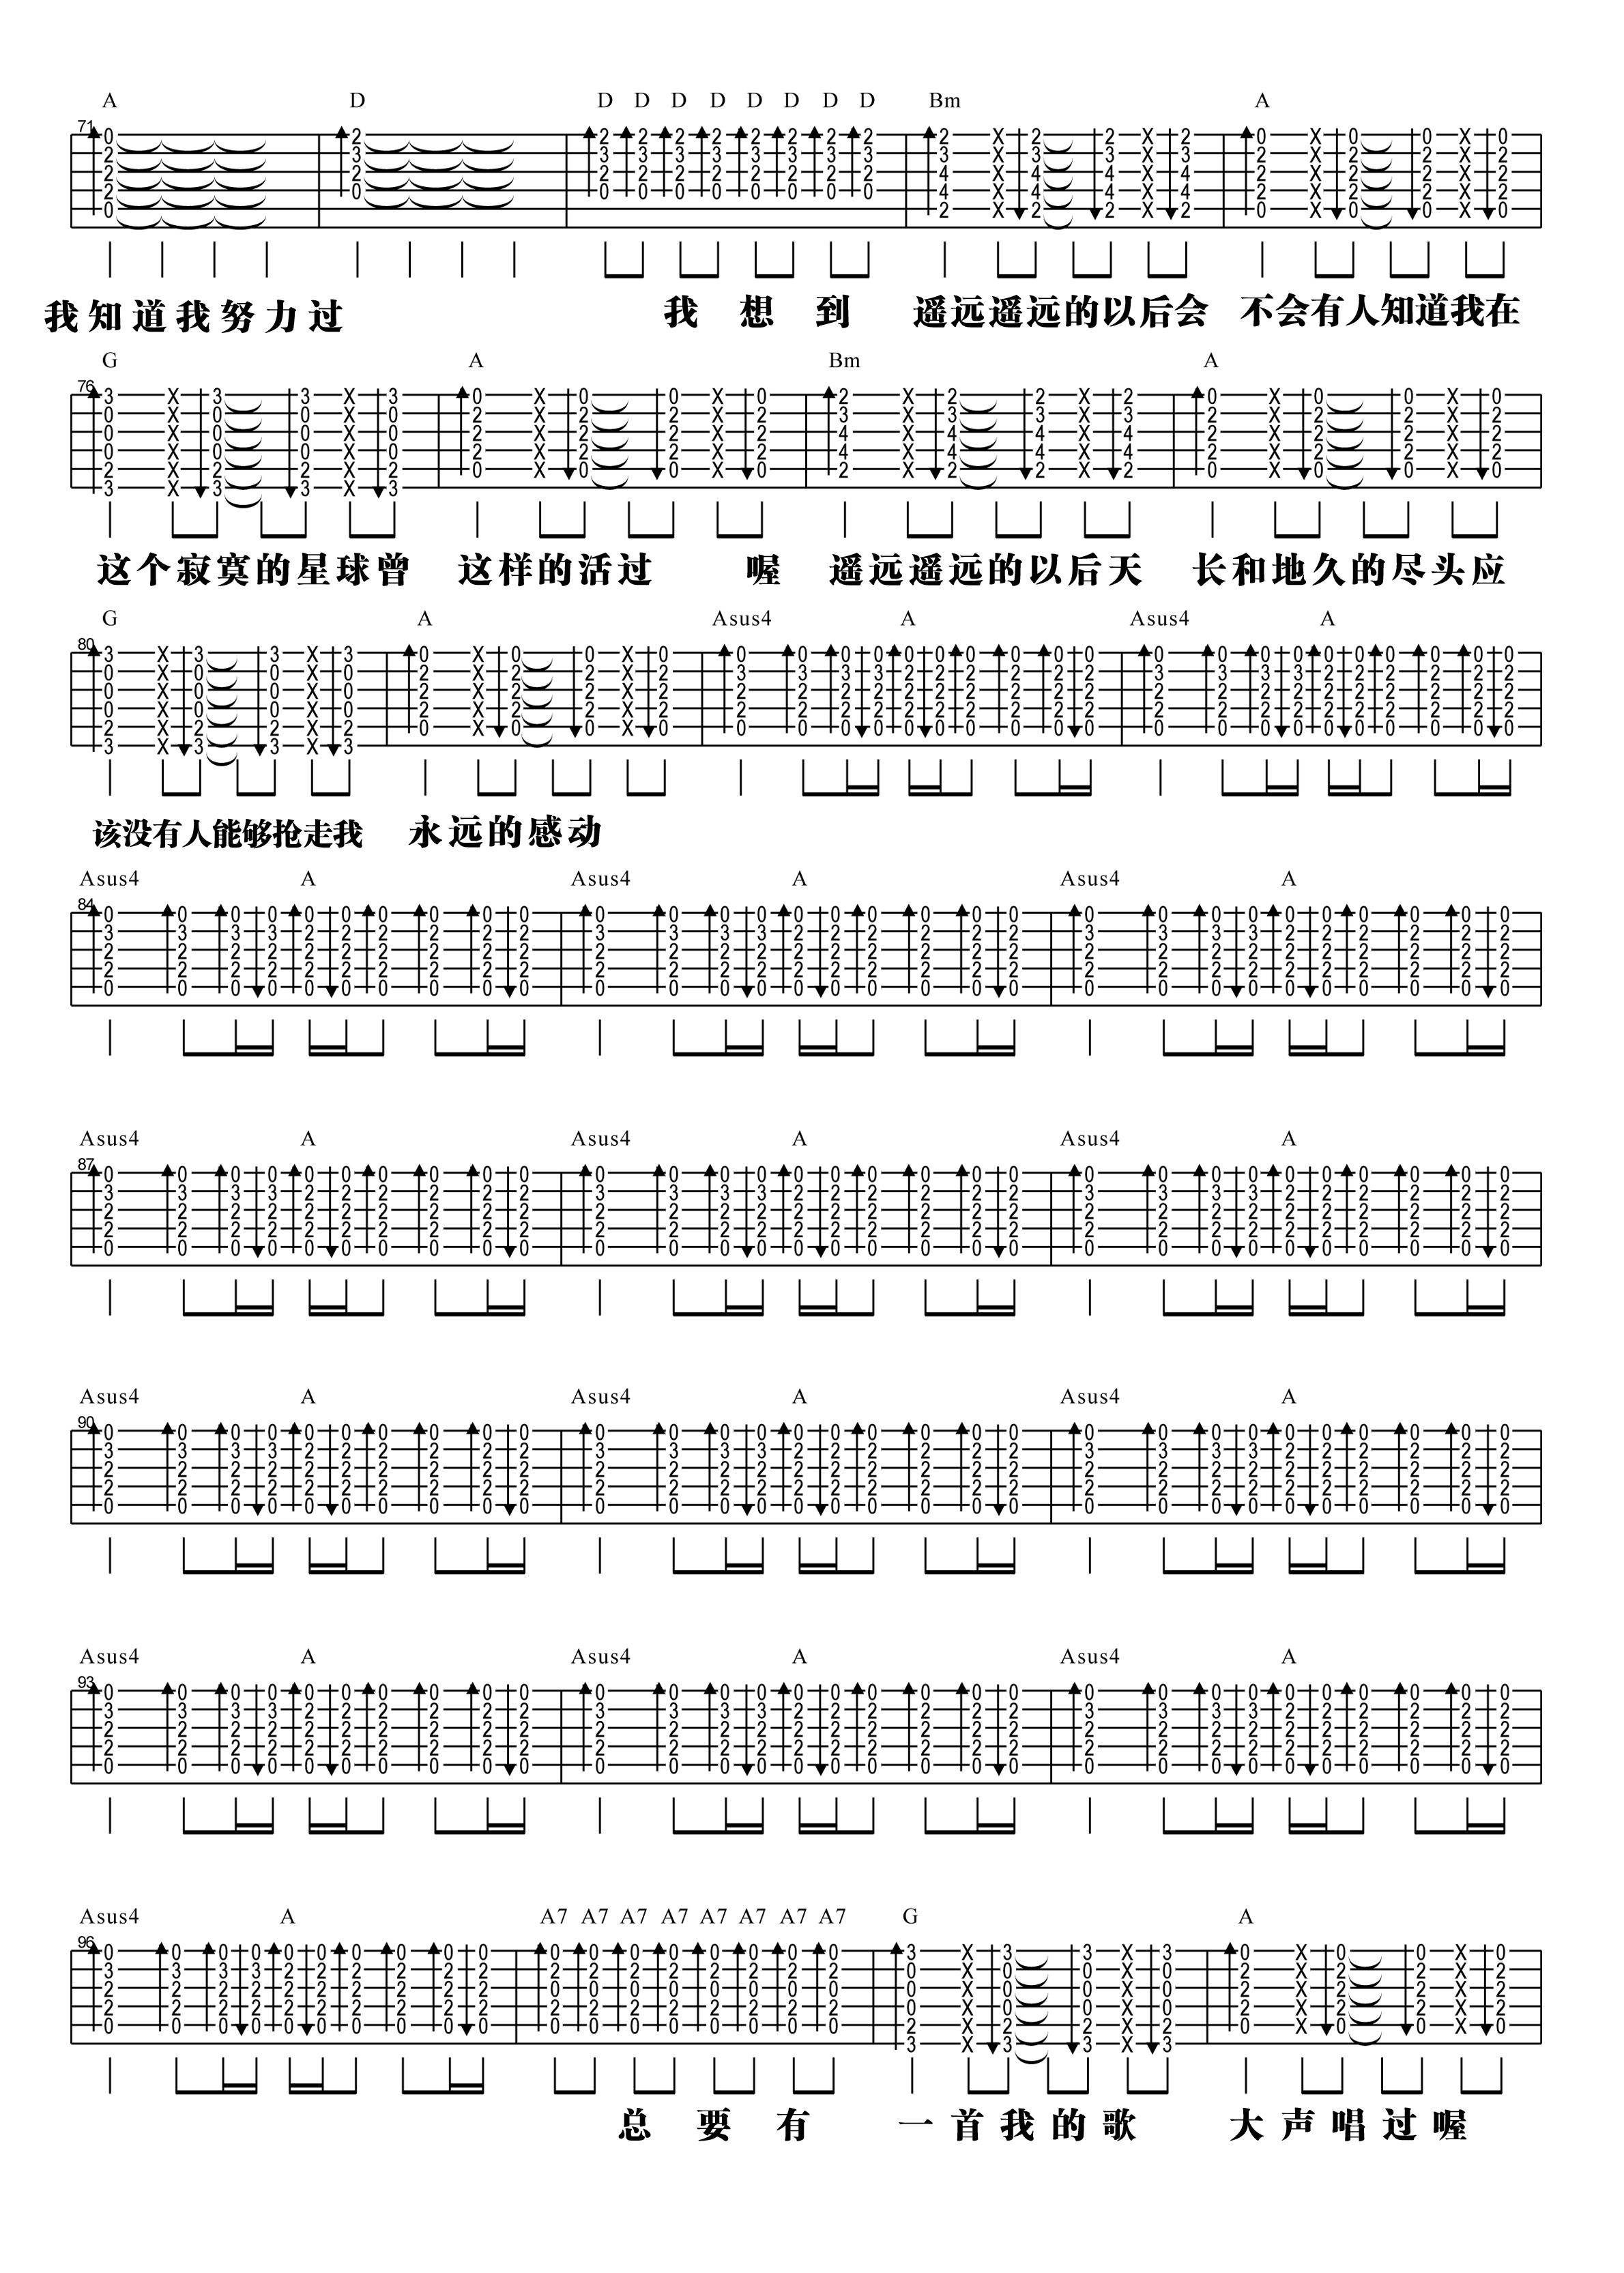 【阿信乐器】#23 五月天《一颗苹果》吉他教学吉他谱(图片谱,弹唱,教学)_五月天(Mayday)_3.jpg